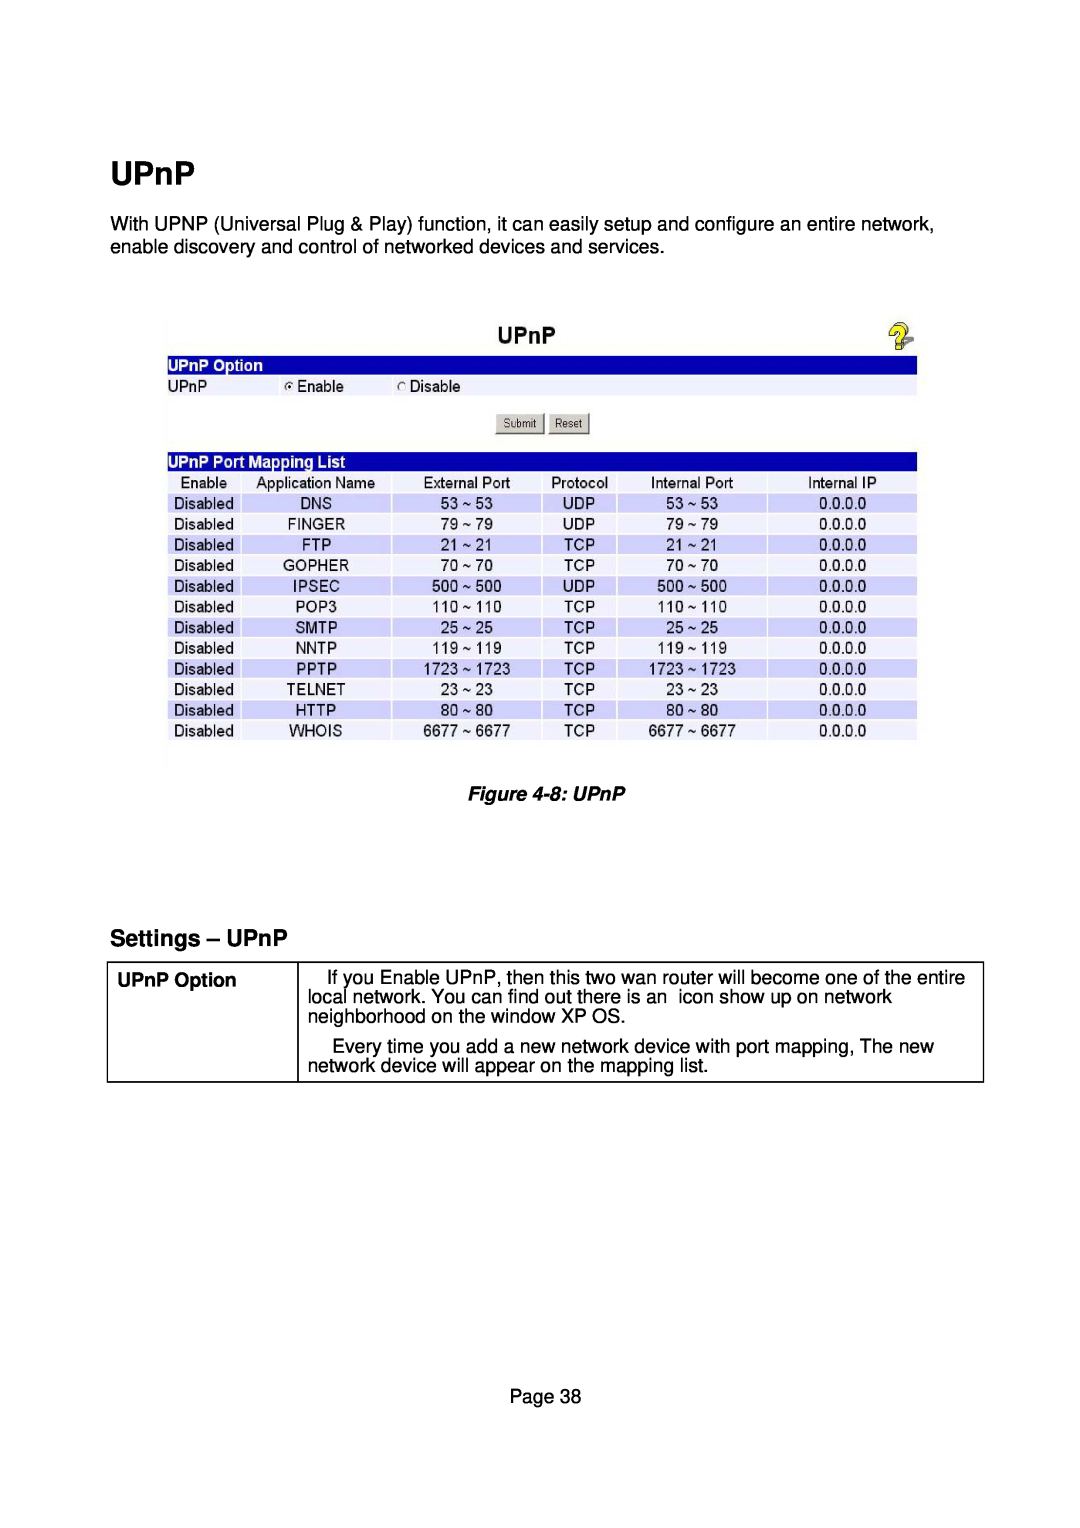 Edimax Technology Edimax user guide Router manual Settings - UPnP, 8 UPnP, UPnP Option 